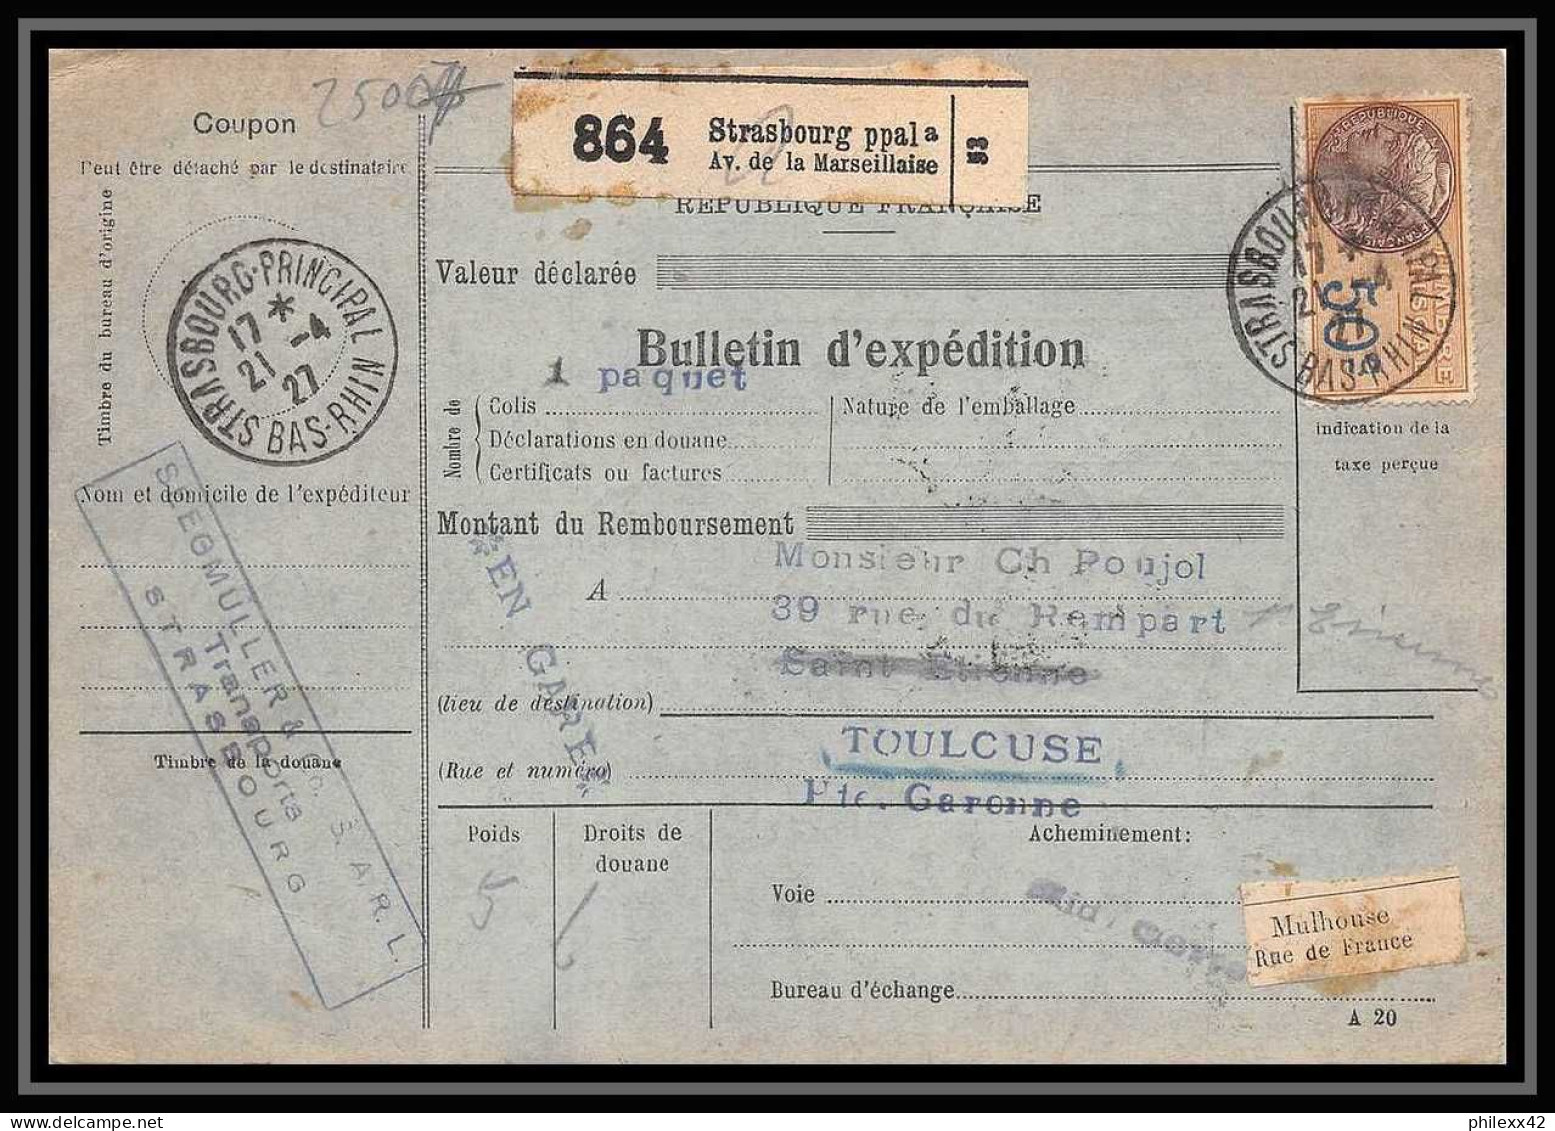 25007 Bulletin D'expédition France Colis Postaux Fiscal Haut Rhin 1927 Strasbourg Semeuse Merson 145 EN GARE - Cartas & Documentos